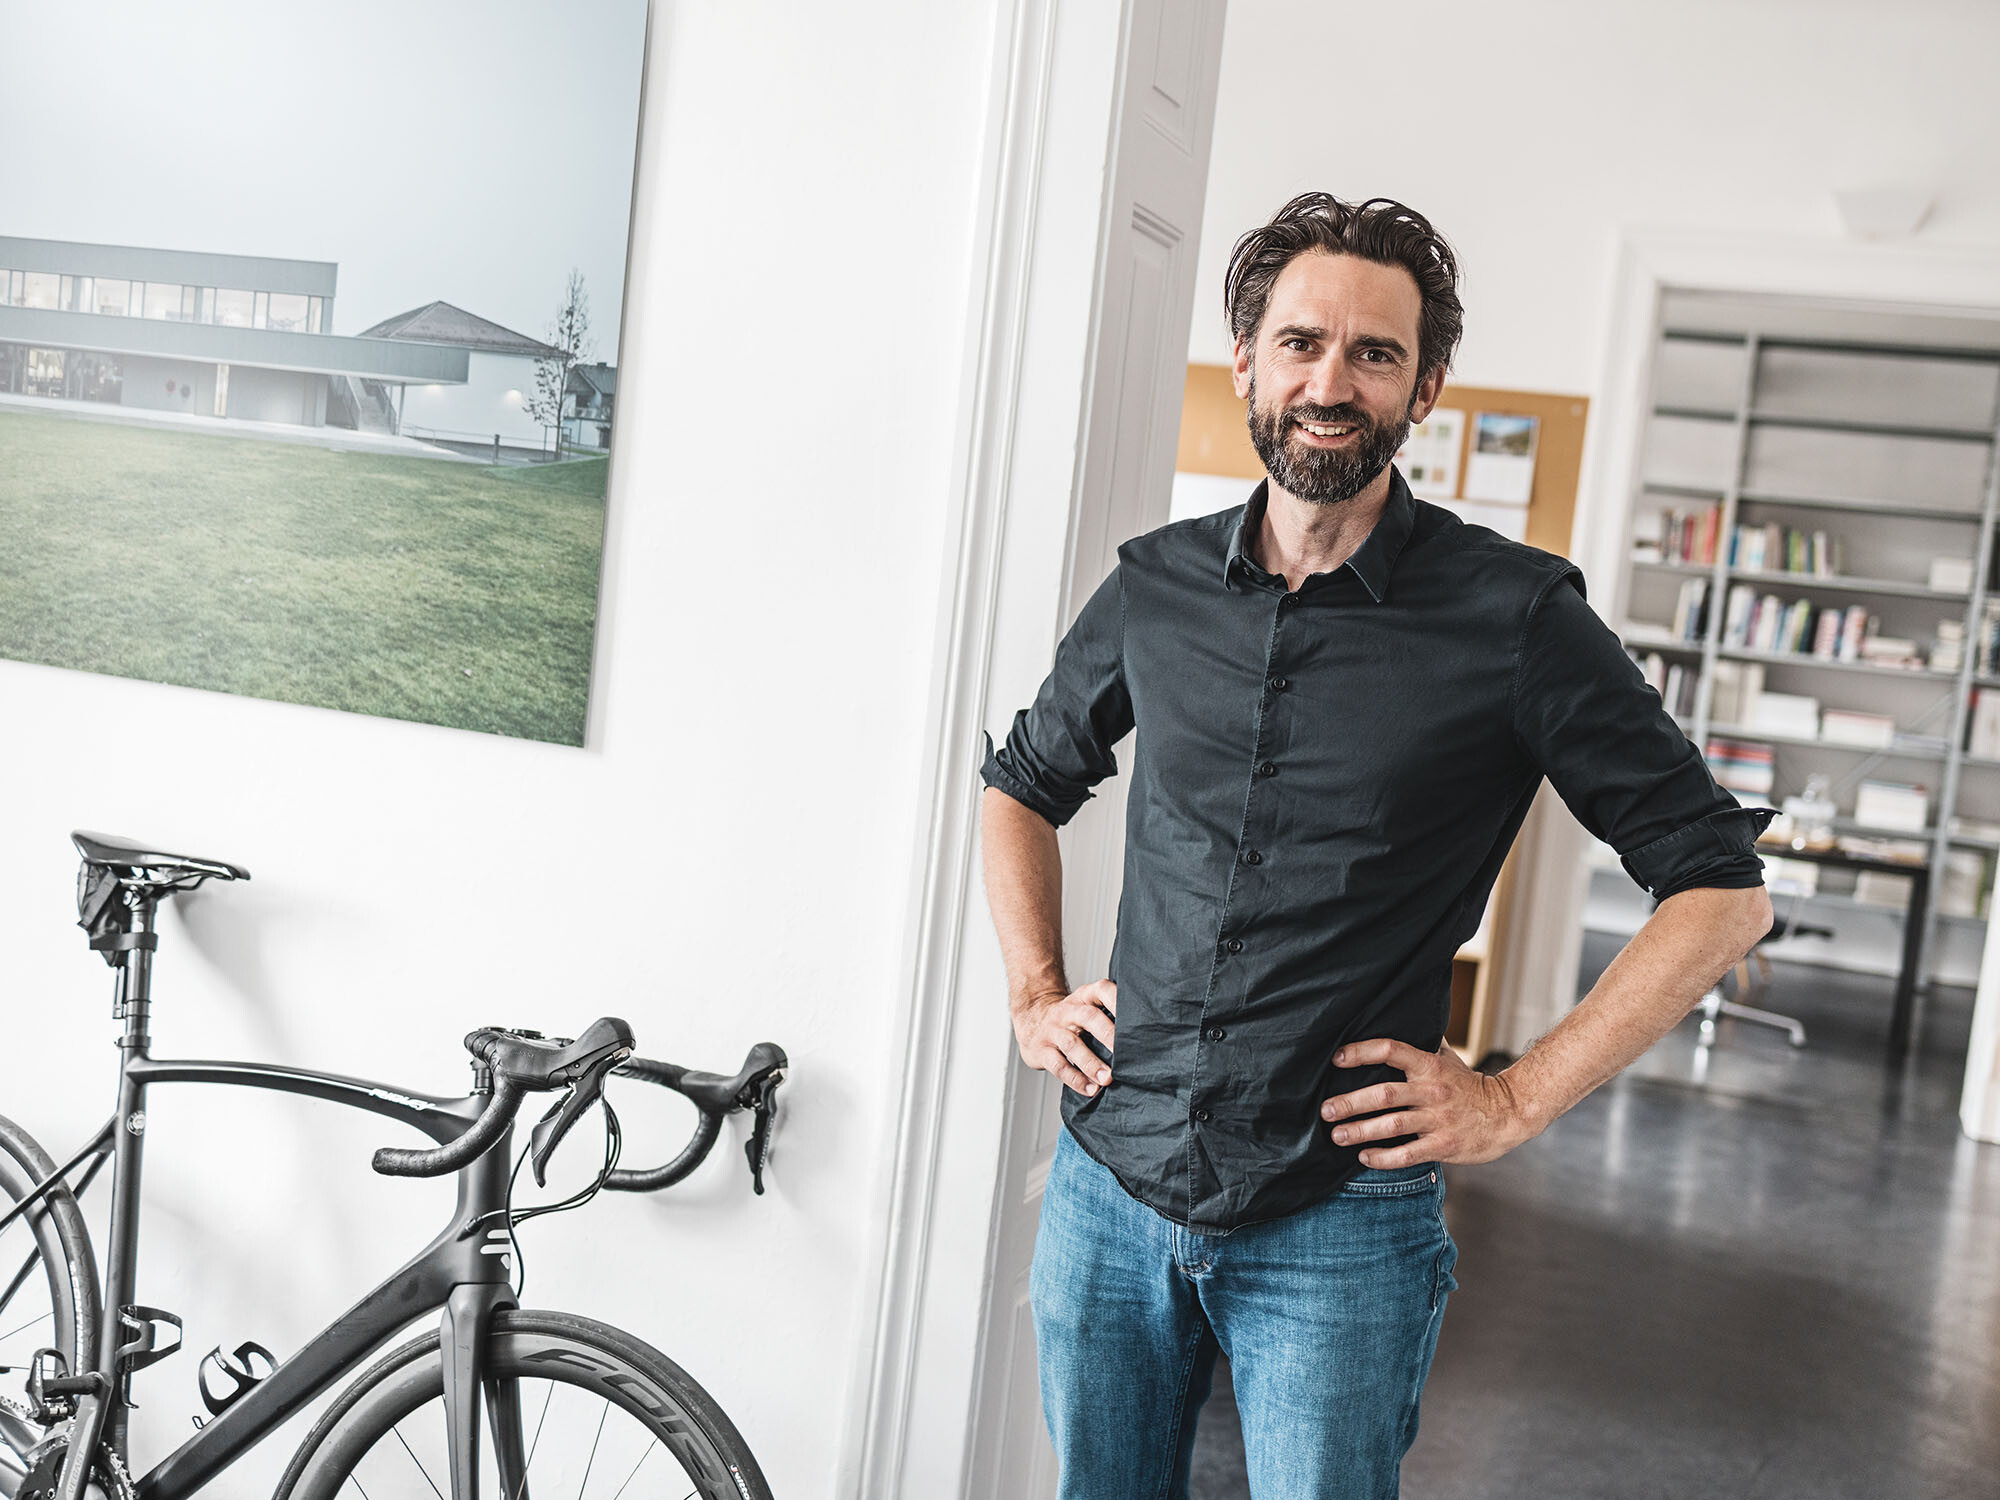 Ritratto dell'architetto Thomas Heil; alle sue spalle un ufficio, mentre accanto a lui vi è una bicicletta appoggiata alla parete.